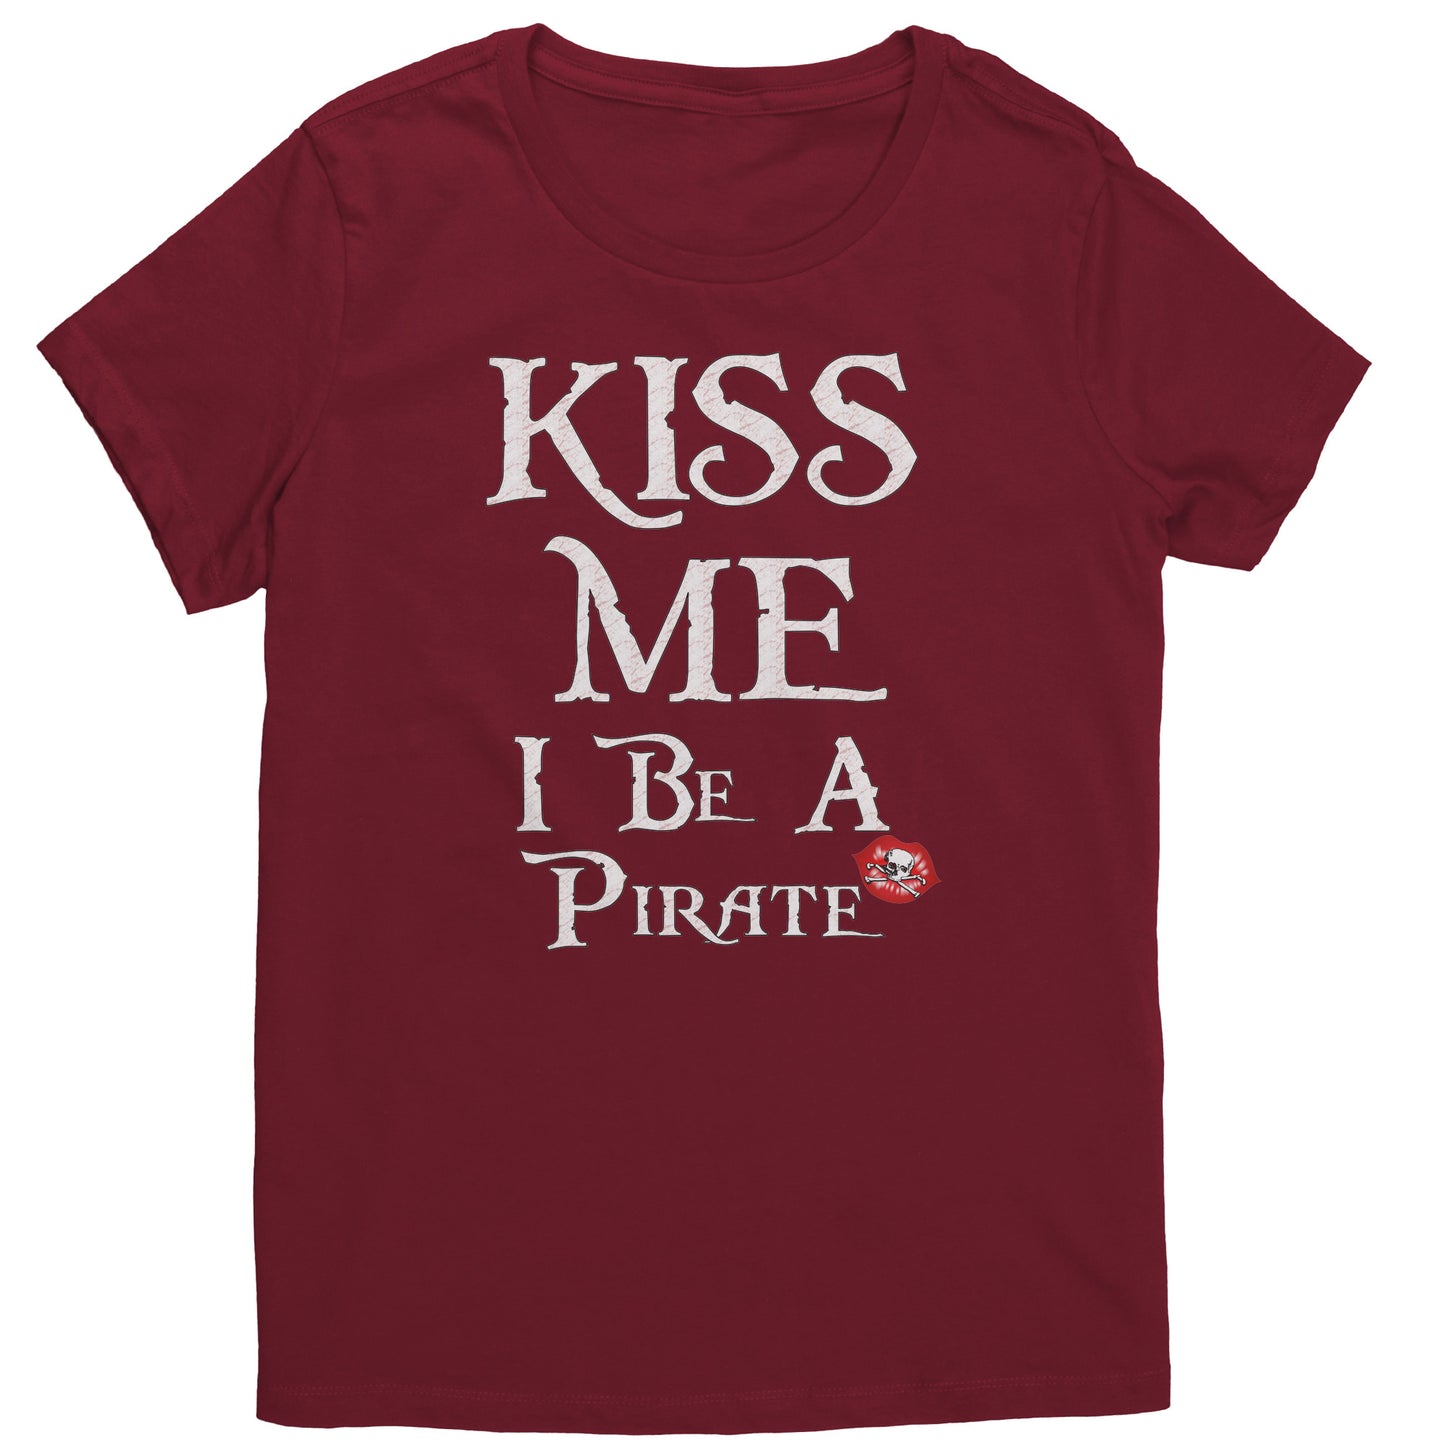 Kiss Me I Be A Pirate